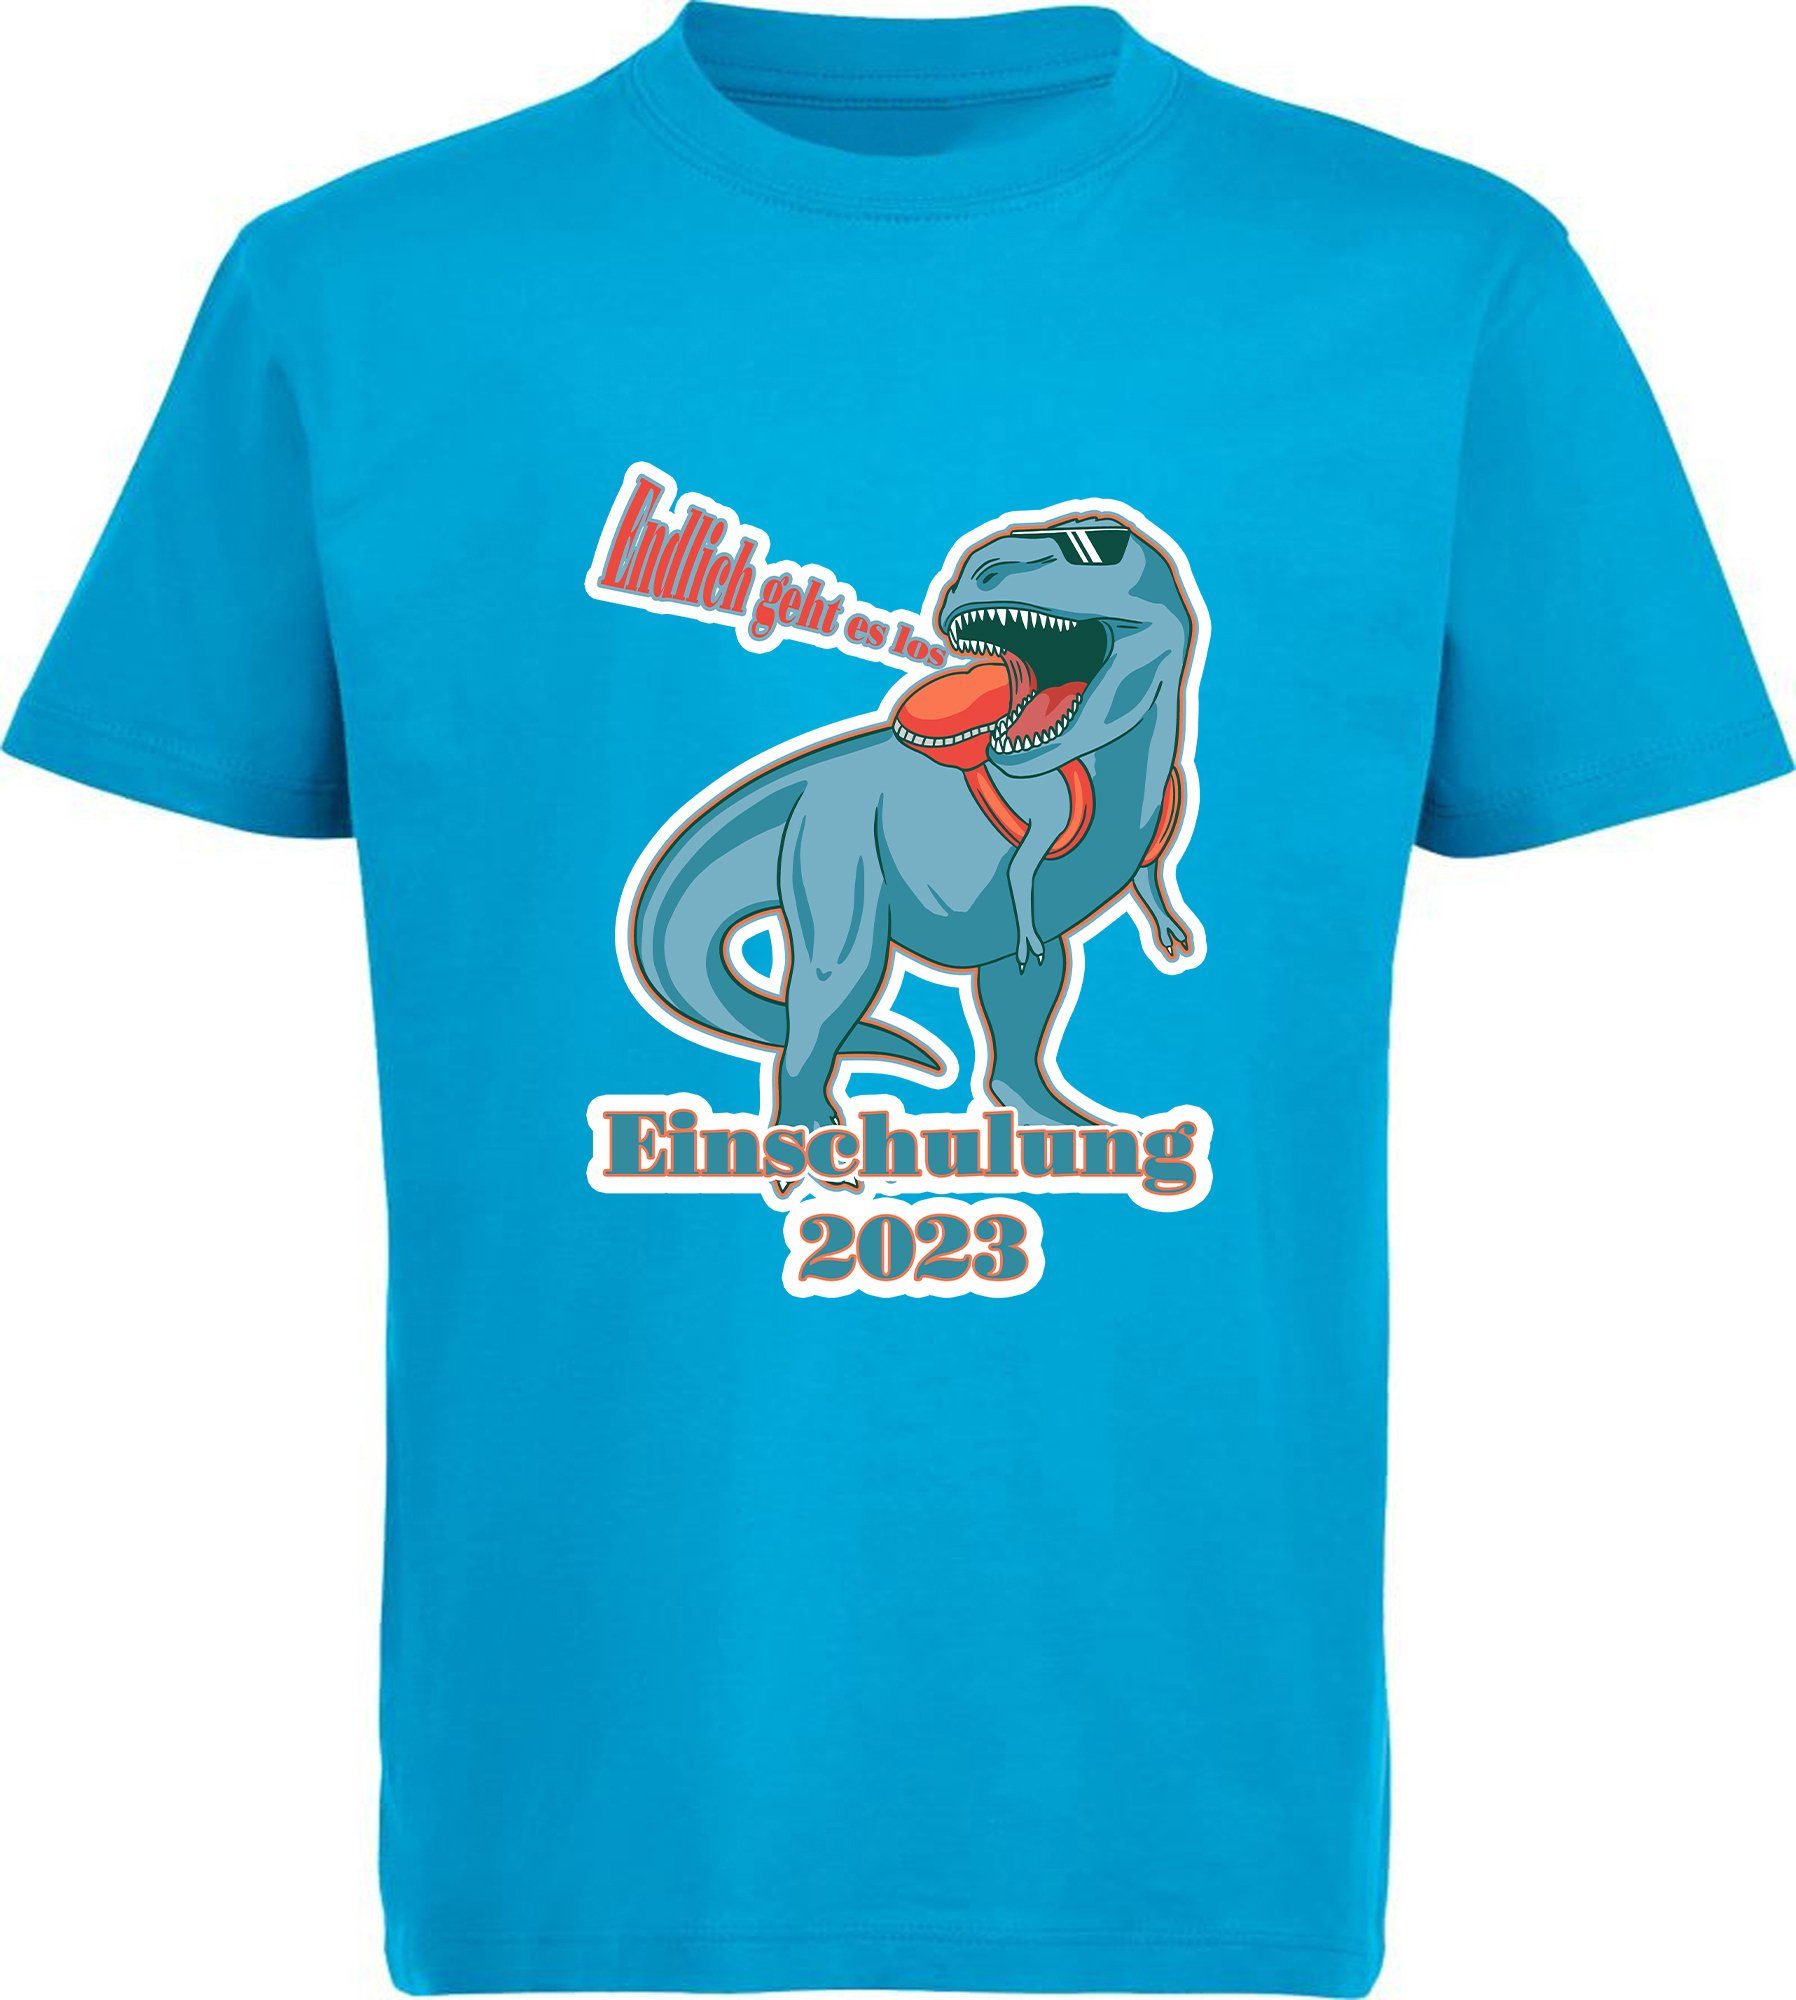 MyDesign24 Print-Shirt bedrucktes Kinder T-Shirt T-Rex - Endlich geht es los Baumwollshirt Einschulung 2023 Aufdruck, schwarz, weiß, rot, blau, i37 aqua blau